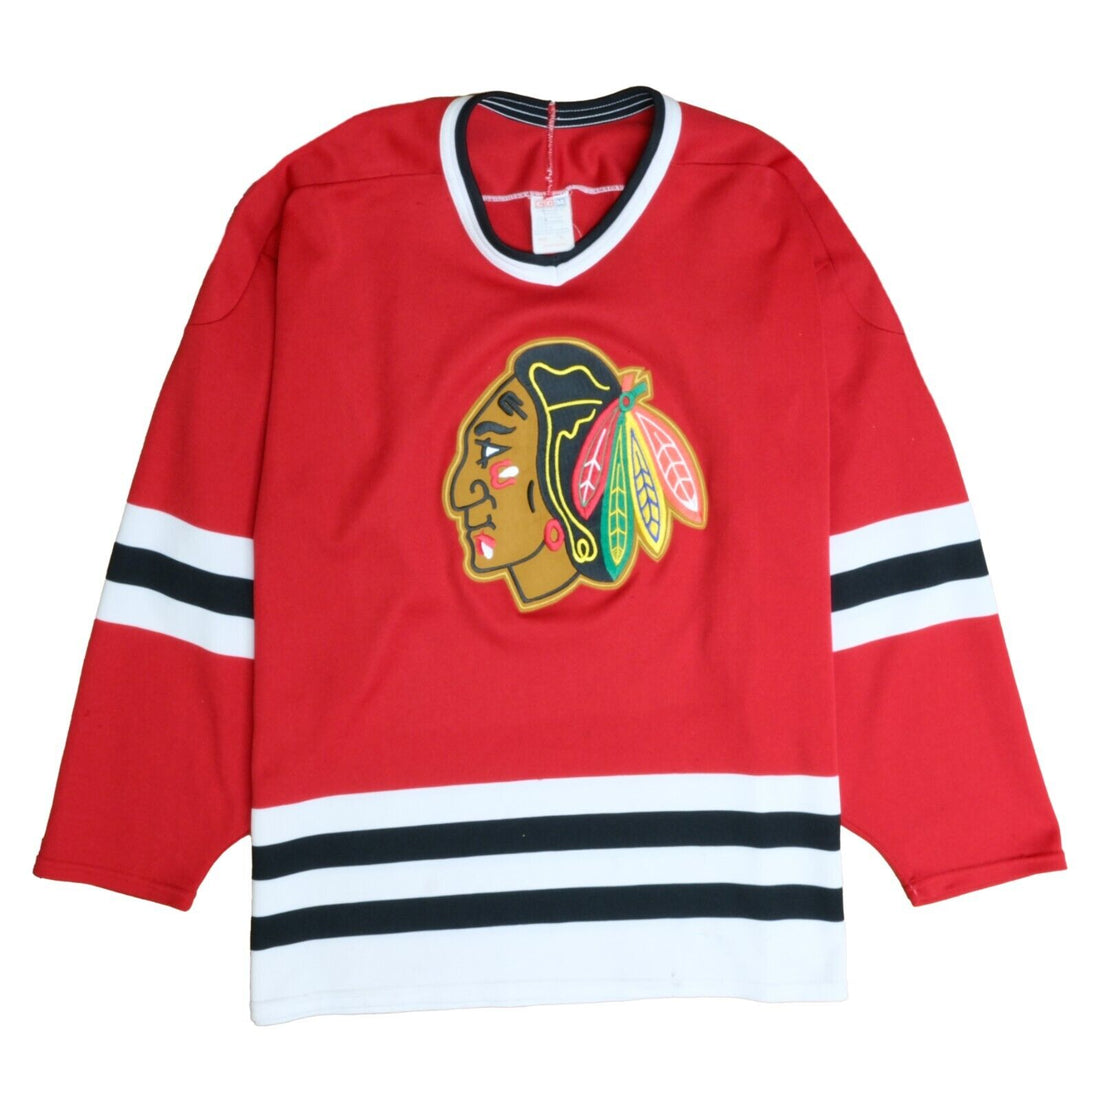 Vintage Chicago Blackhawks CCM Maska Hockey Jersey Size XL Red NHL